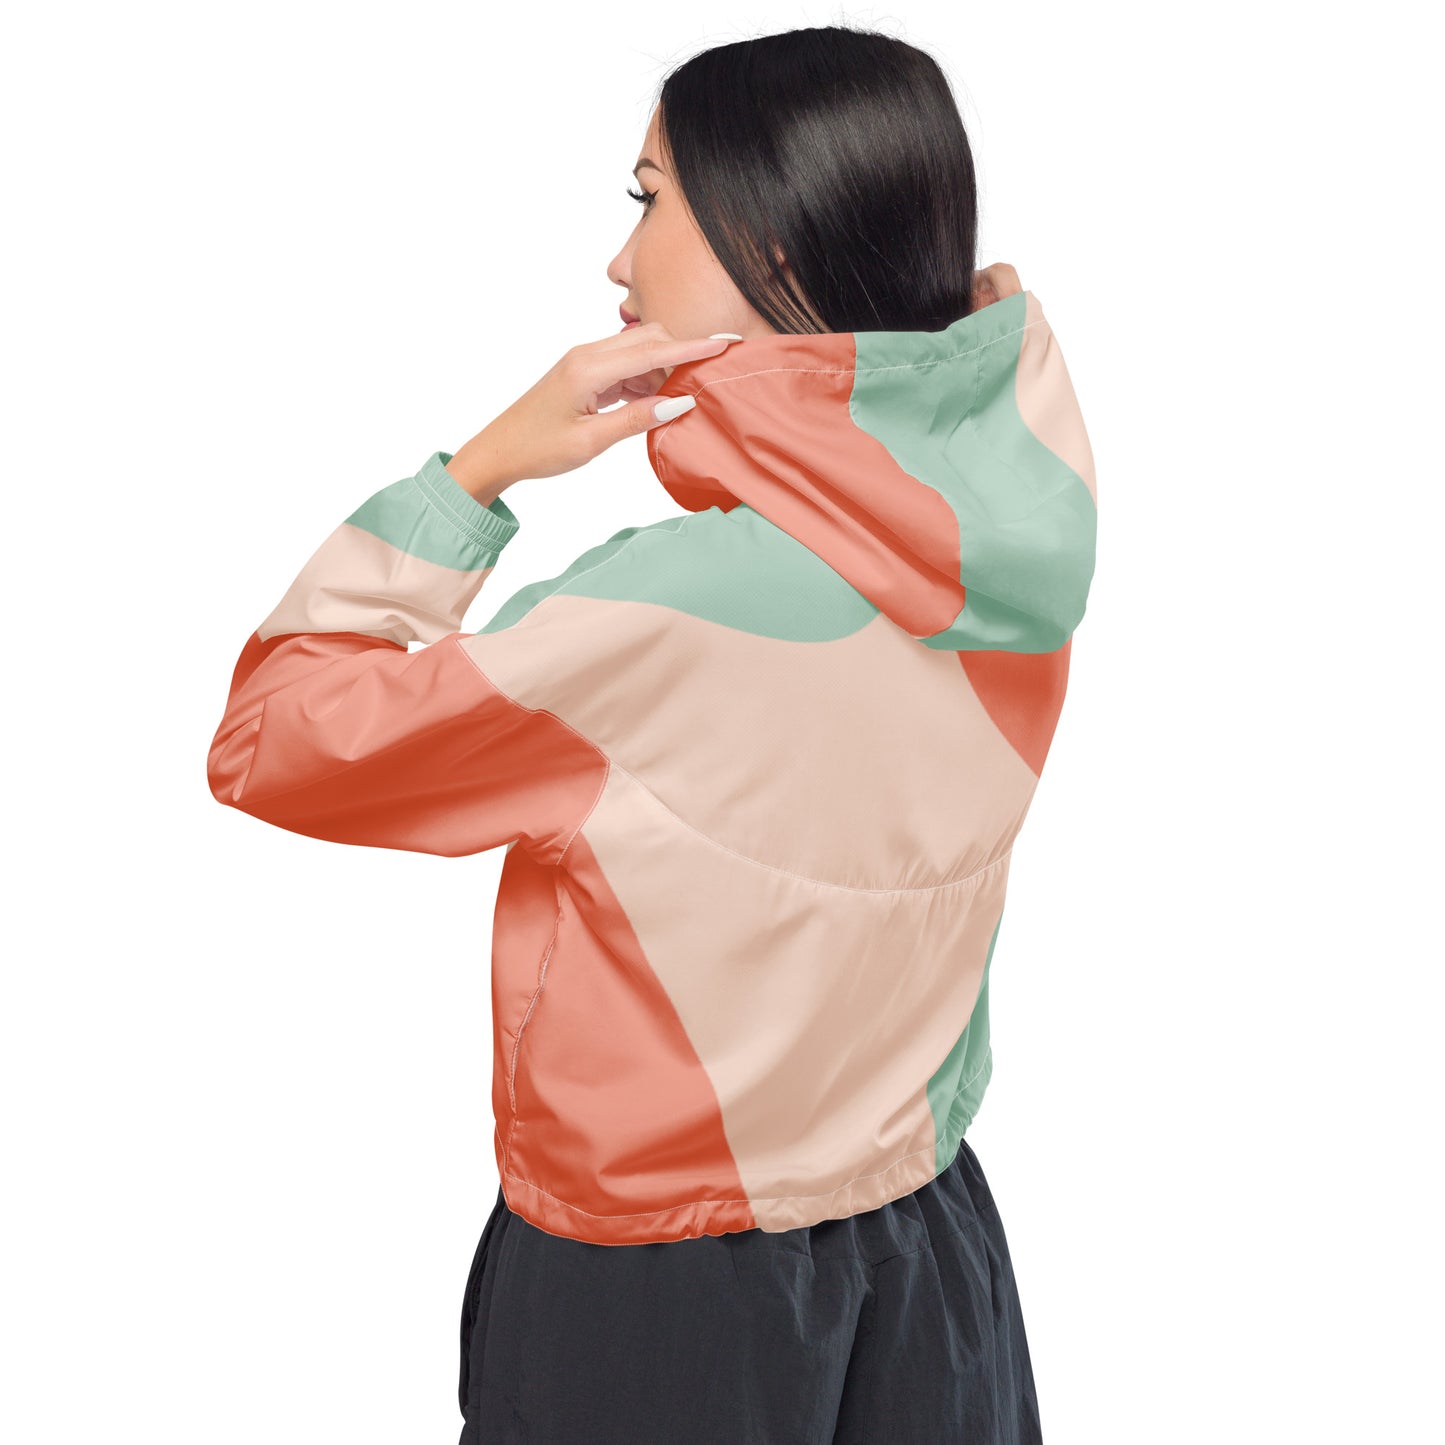 Humble Sportswear™, Women’s Cropped Windbreaker Jacket, Color blocking jackets, activewear jackets for women